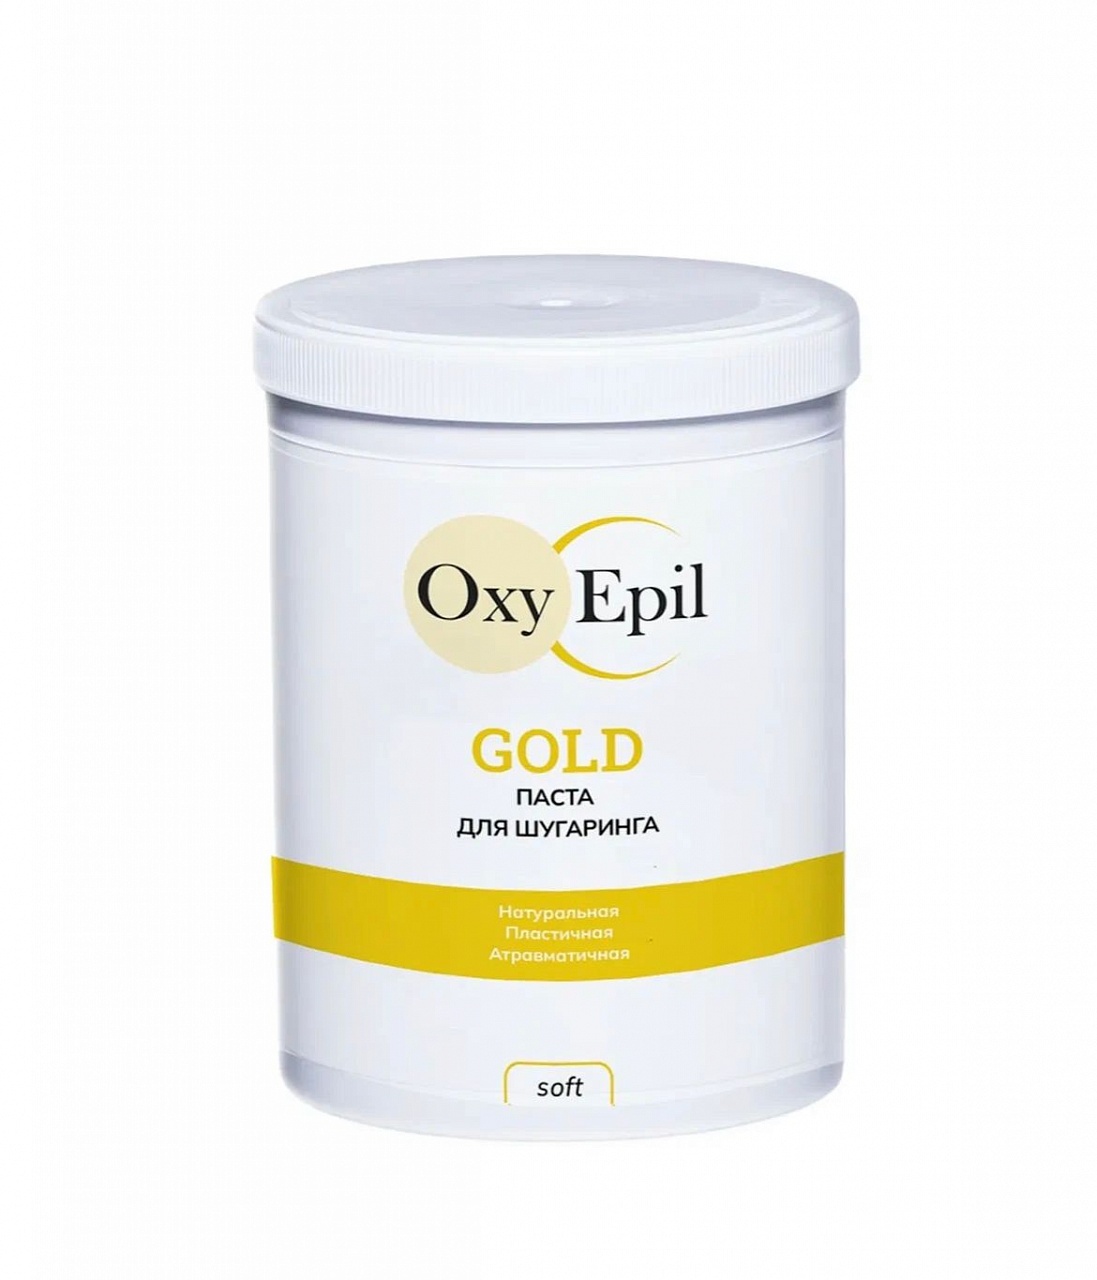 Паста для шугаринга OxyEpil GOLD - Soft 1500 гр сахарная паста для шугаринга leetoo ultralight киви ультрамягкая 1500 г